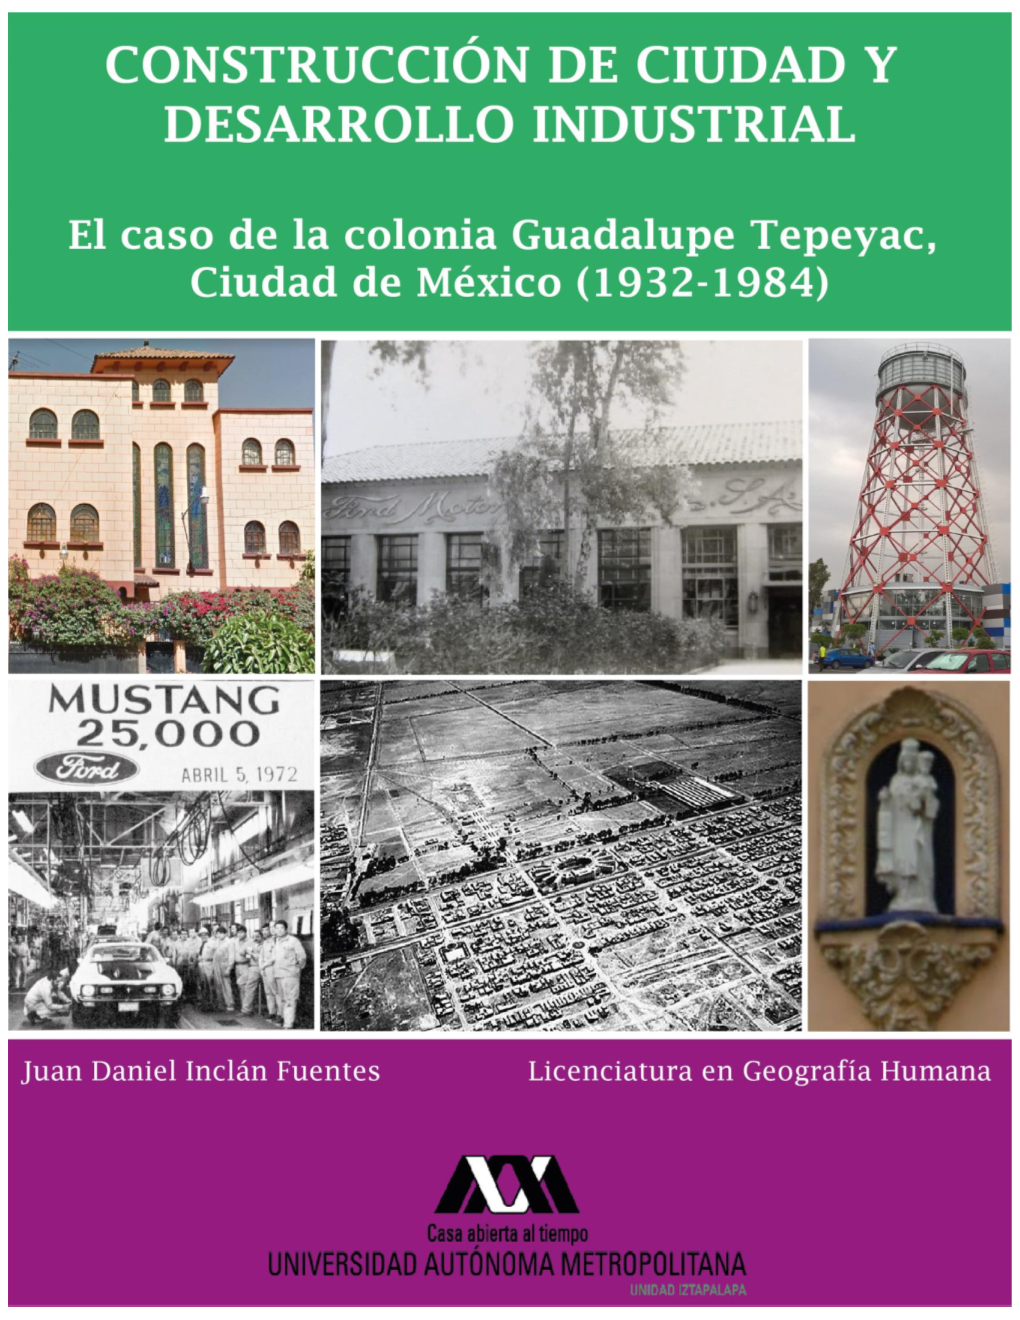 El Caso De La Colonia Guadalupe Tepeyac, Ciudad De México (1932-1984)”